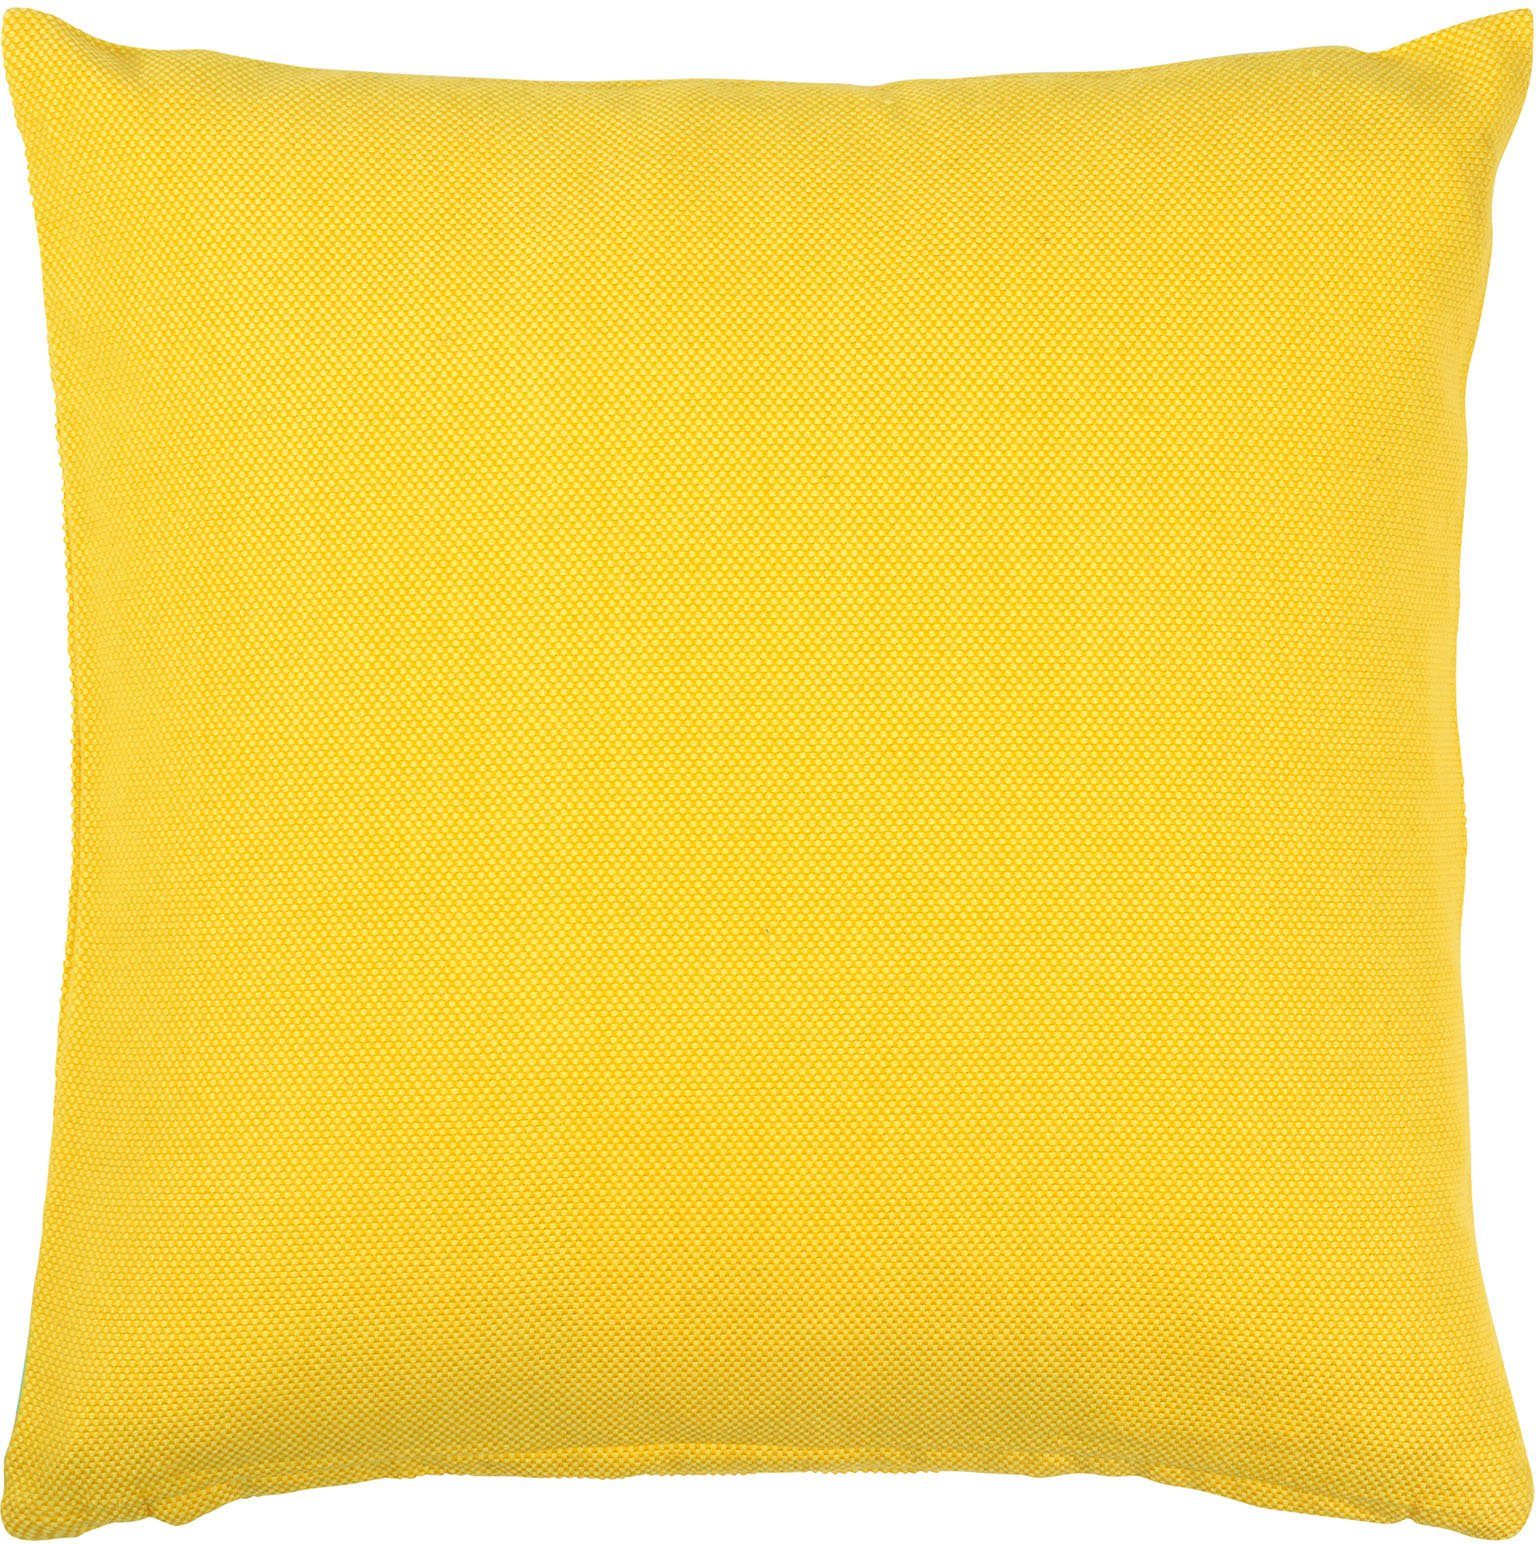 PAD Dekokissen Risotto, einzigartiges Design yellow